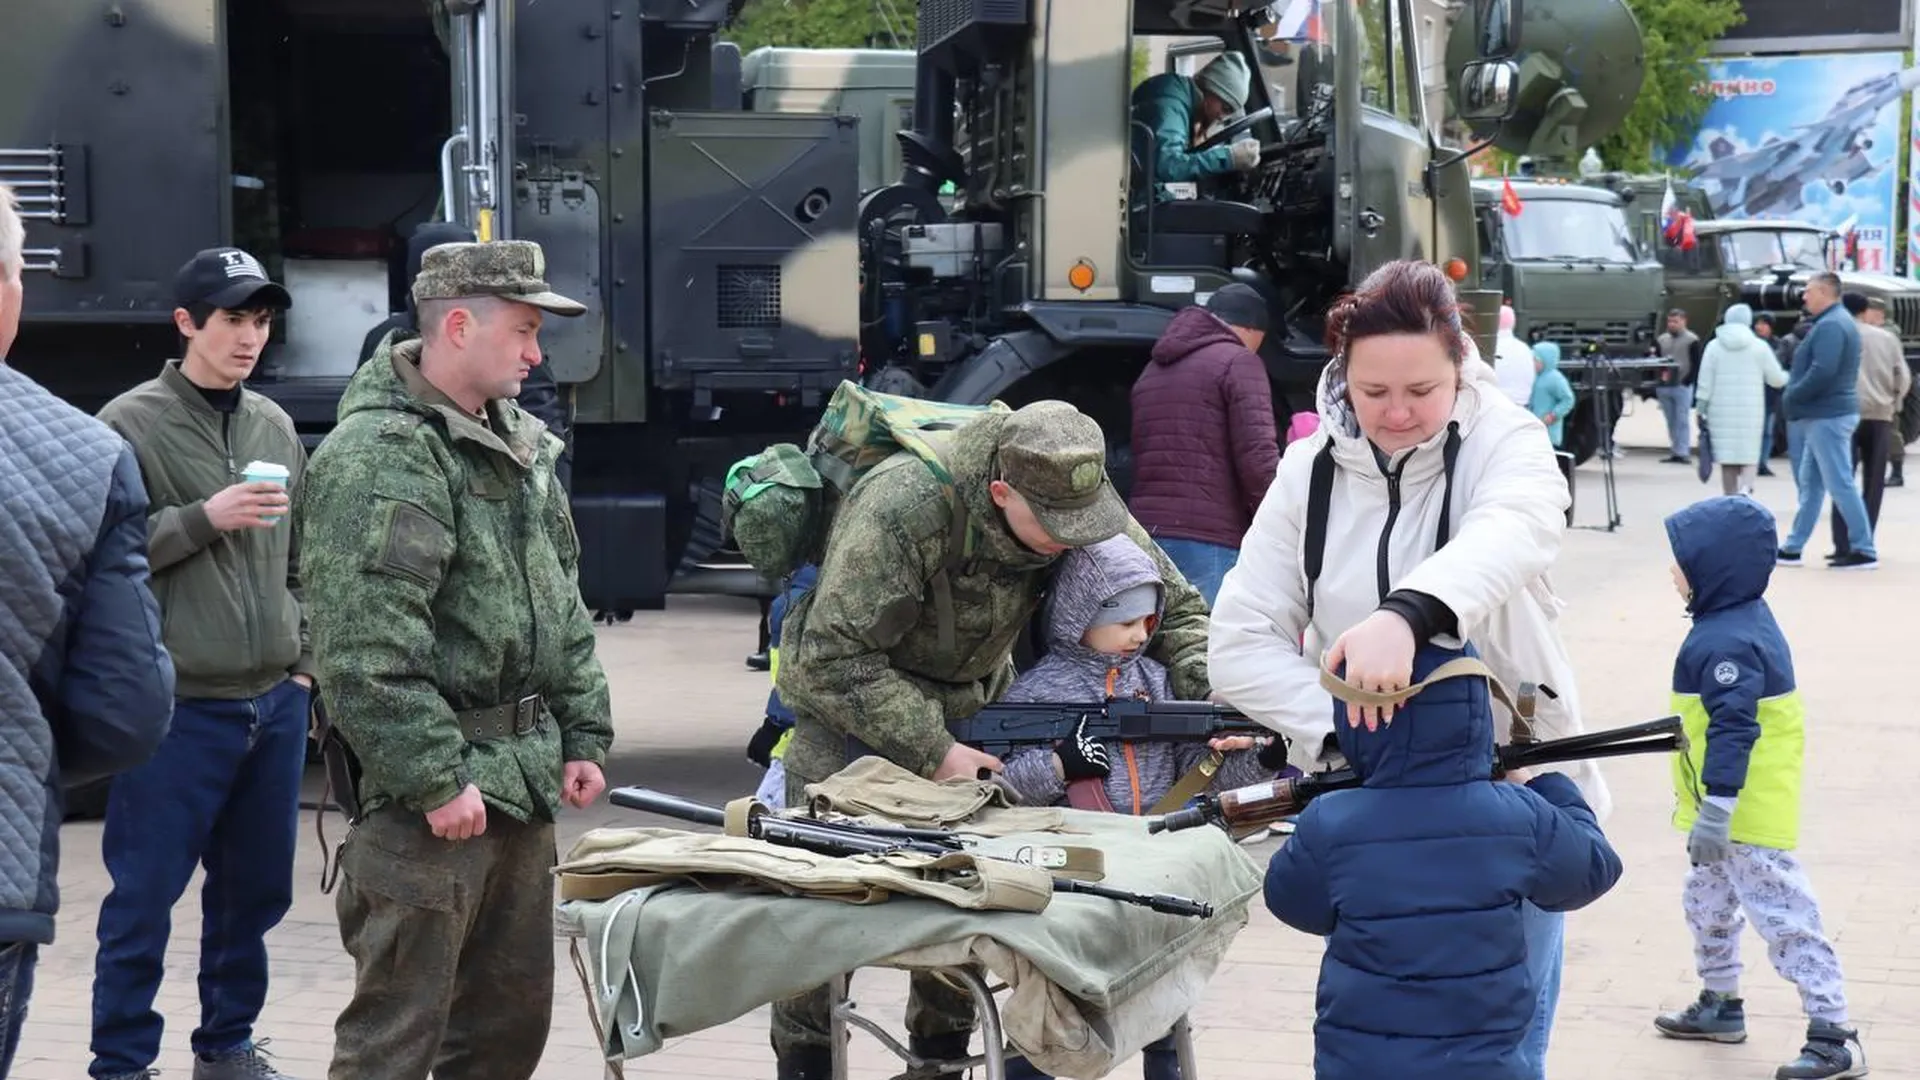 Жителям Ступина показали военную технику в День Победы